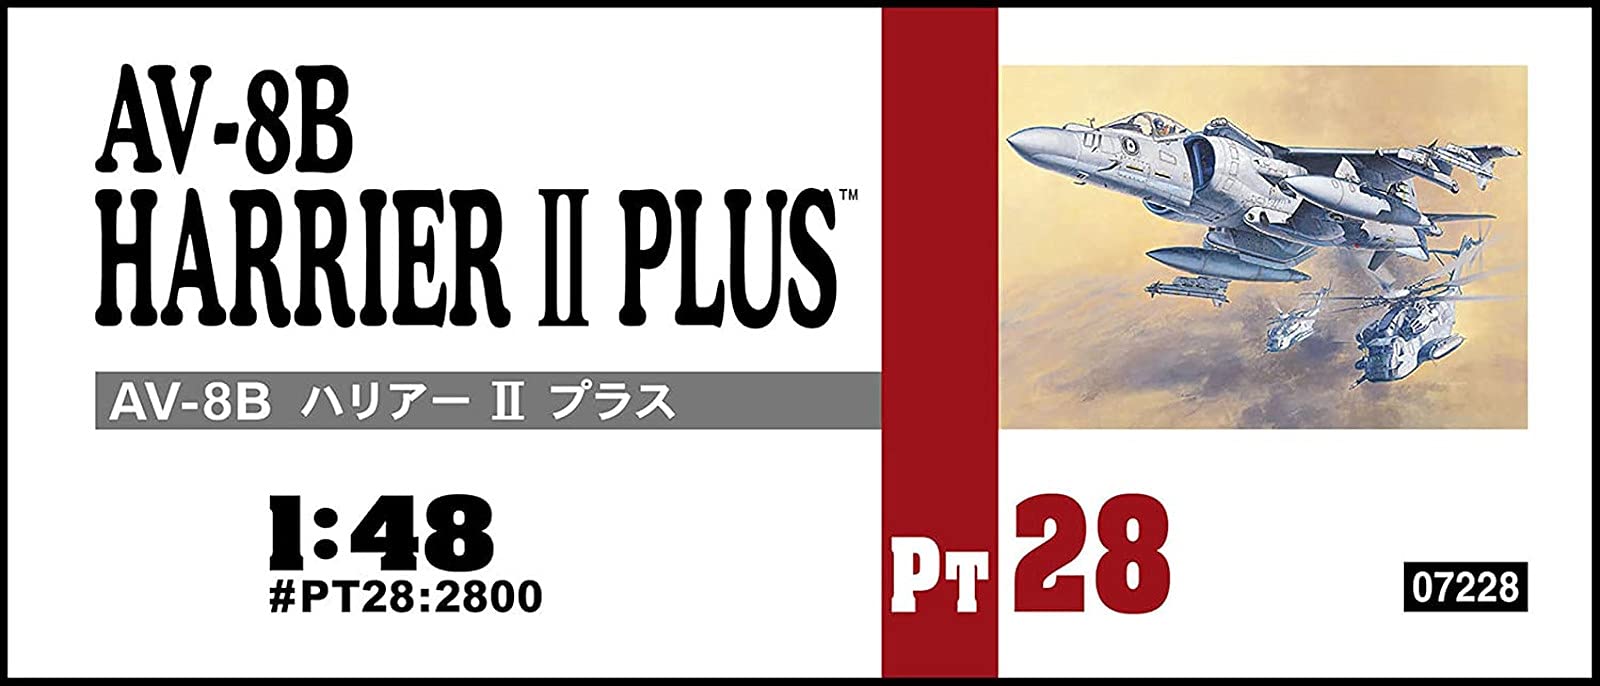 HASEGAWA 1/48 Av-8B Harrier II Plus USMC Angreifer Plastikmodell